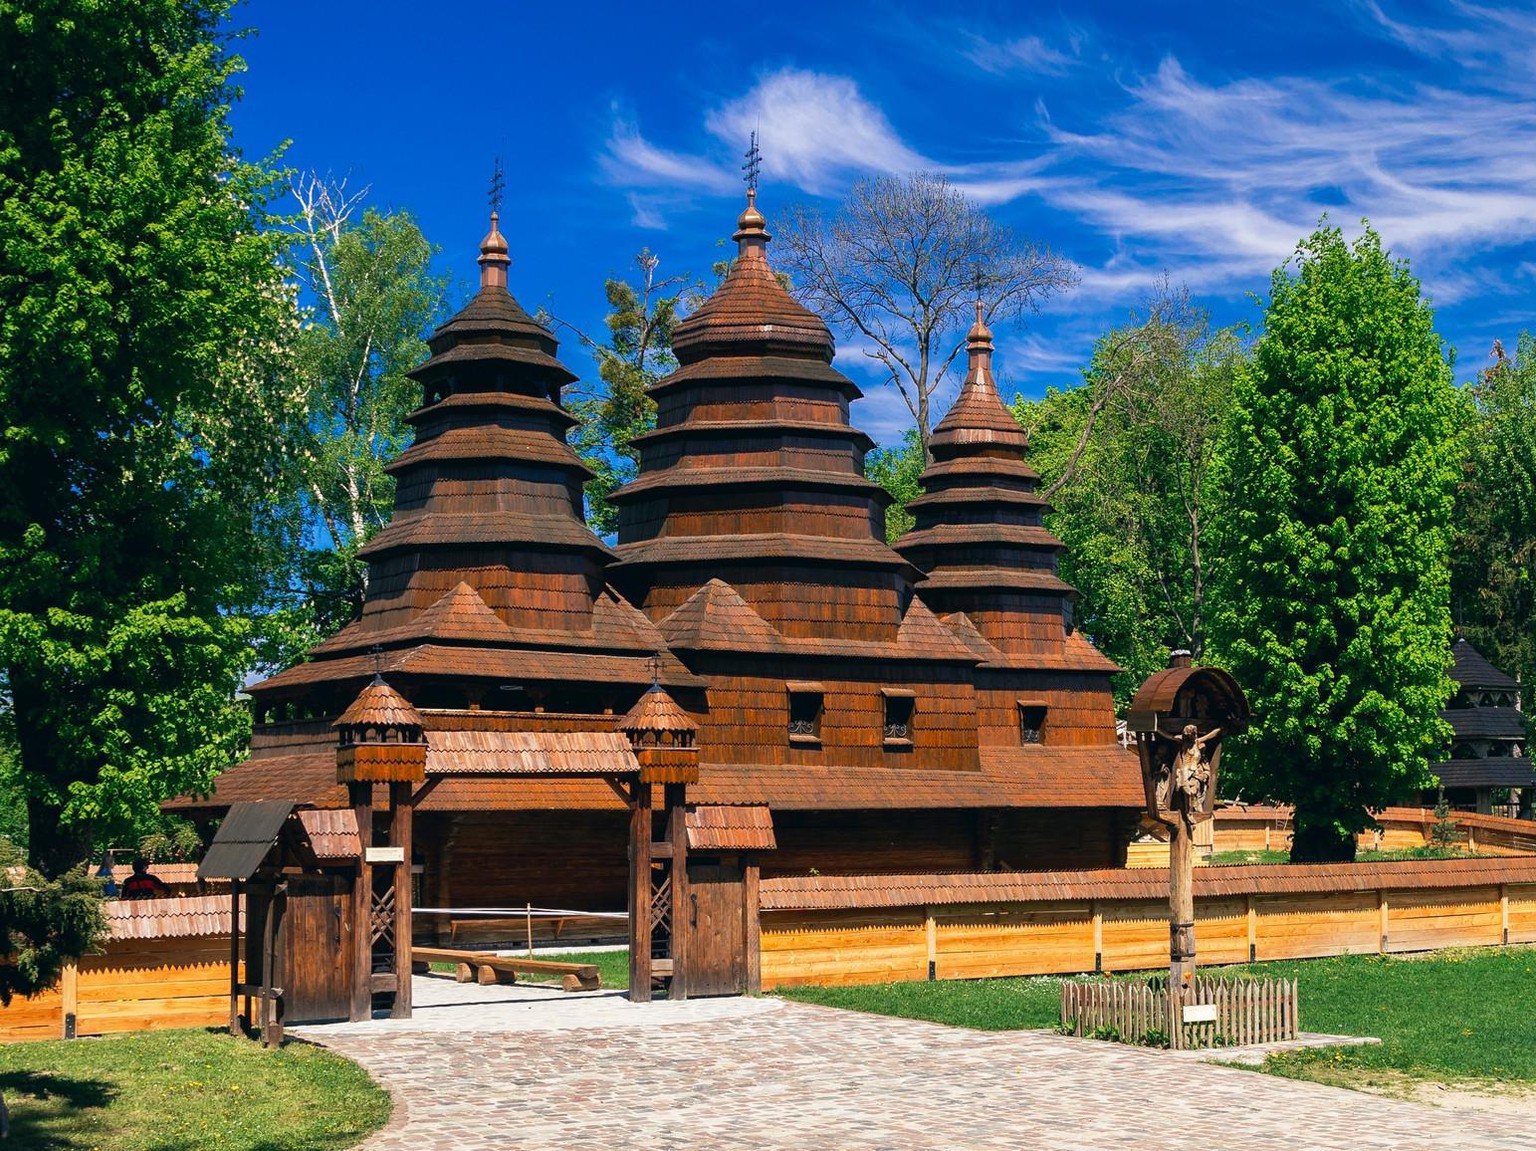 Eine der 16 Holzkirchen, die zwischen dem 16. und 19. Jahrhundert datieren, in der Karpatenregion (Ukraine/Polen). Sie gehören zum UNESCO-Weltkulturerbe. Acht der Kirchen befinden sich in der Ukraine.